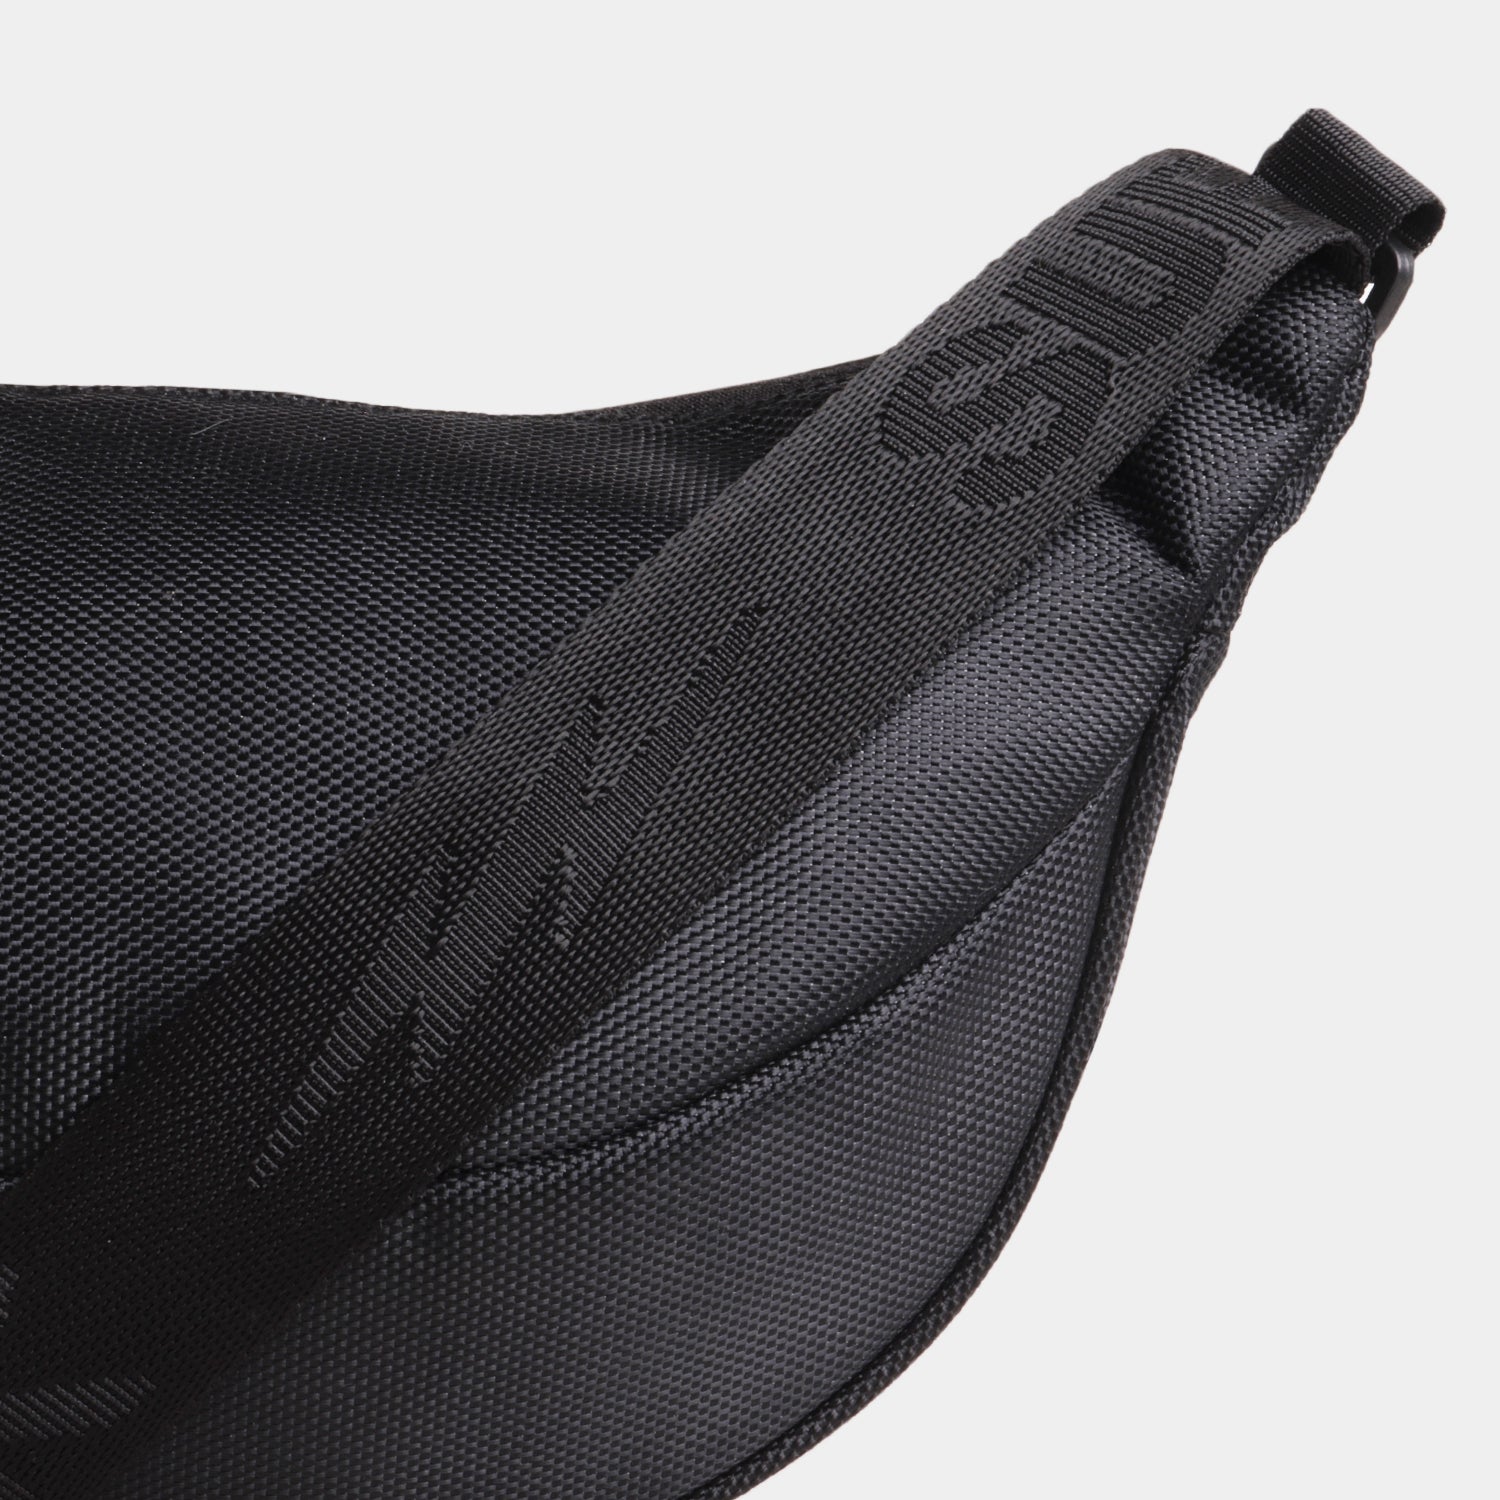 Supervek Crossbody Slinger - Carbon Black - Urban Functional Fanny Hip Bag for Everyday Essentials - Belt Design